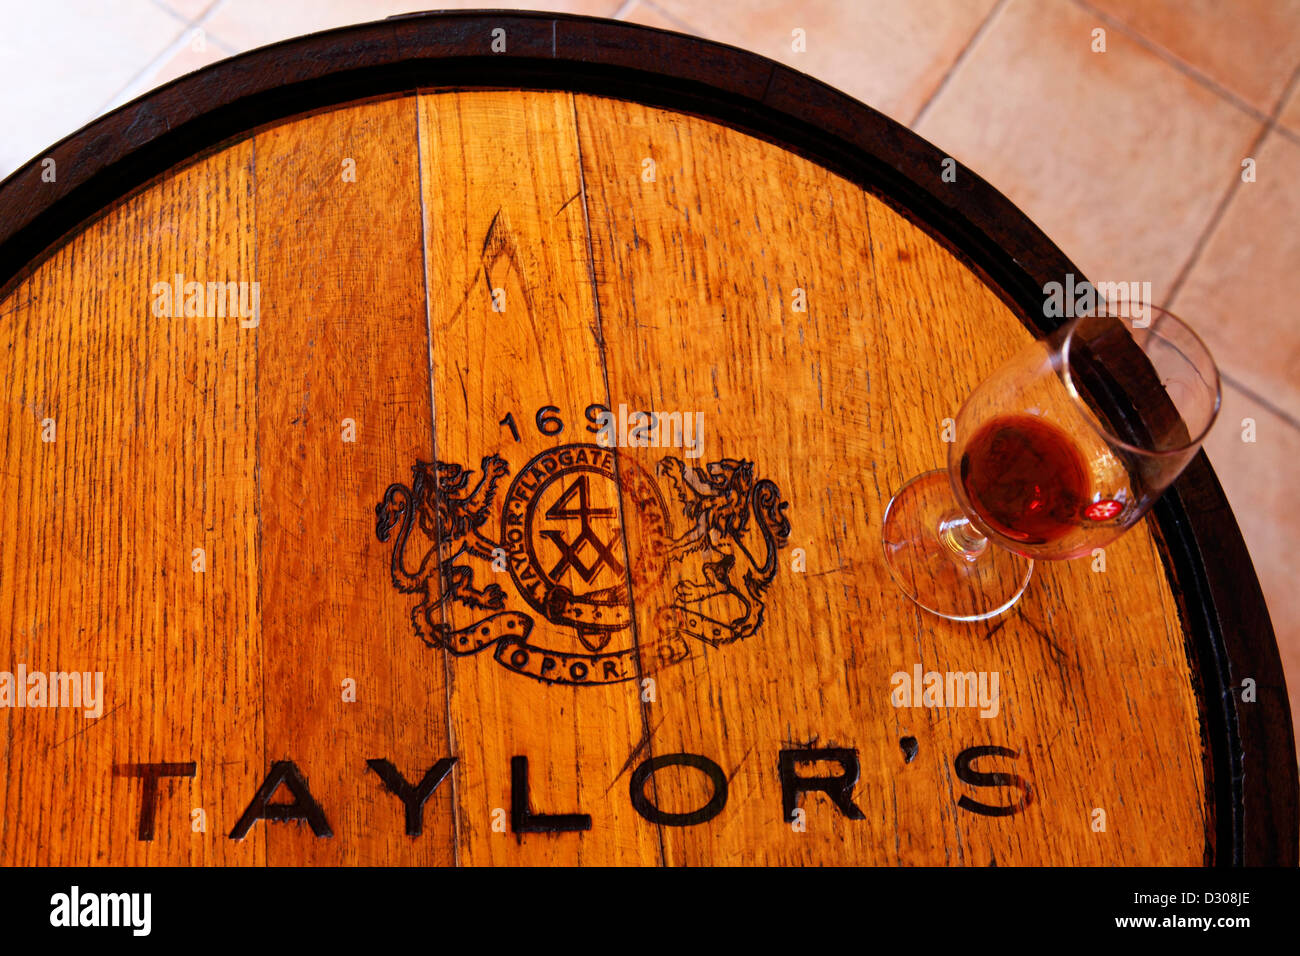 Verre de vin se dresse sur un baril de Taylor lors d'une dégustation de vin de Porto à Vila Nova de Gaia, Portugal. Banque D'Images